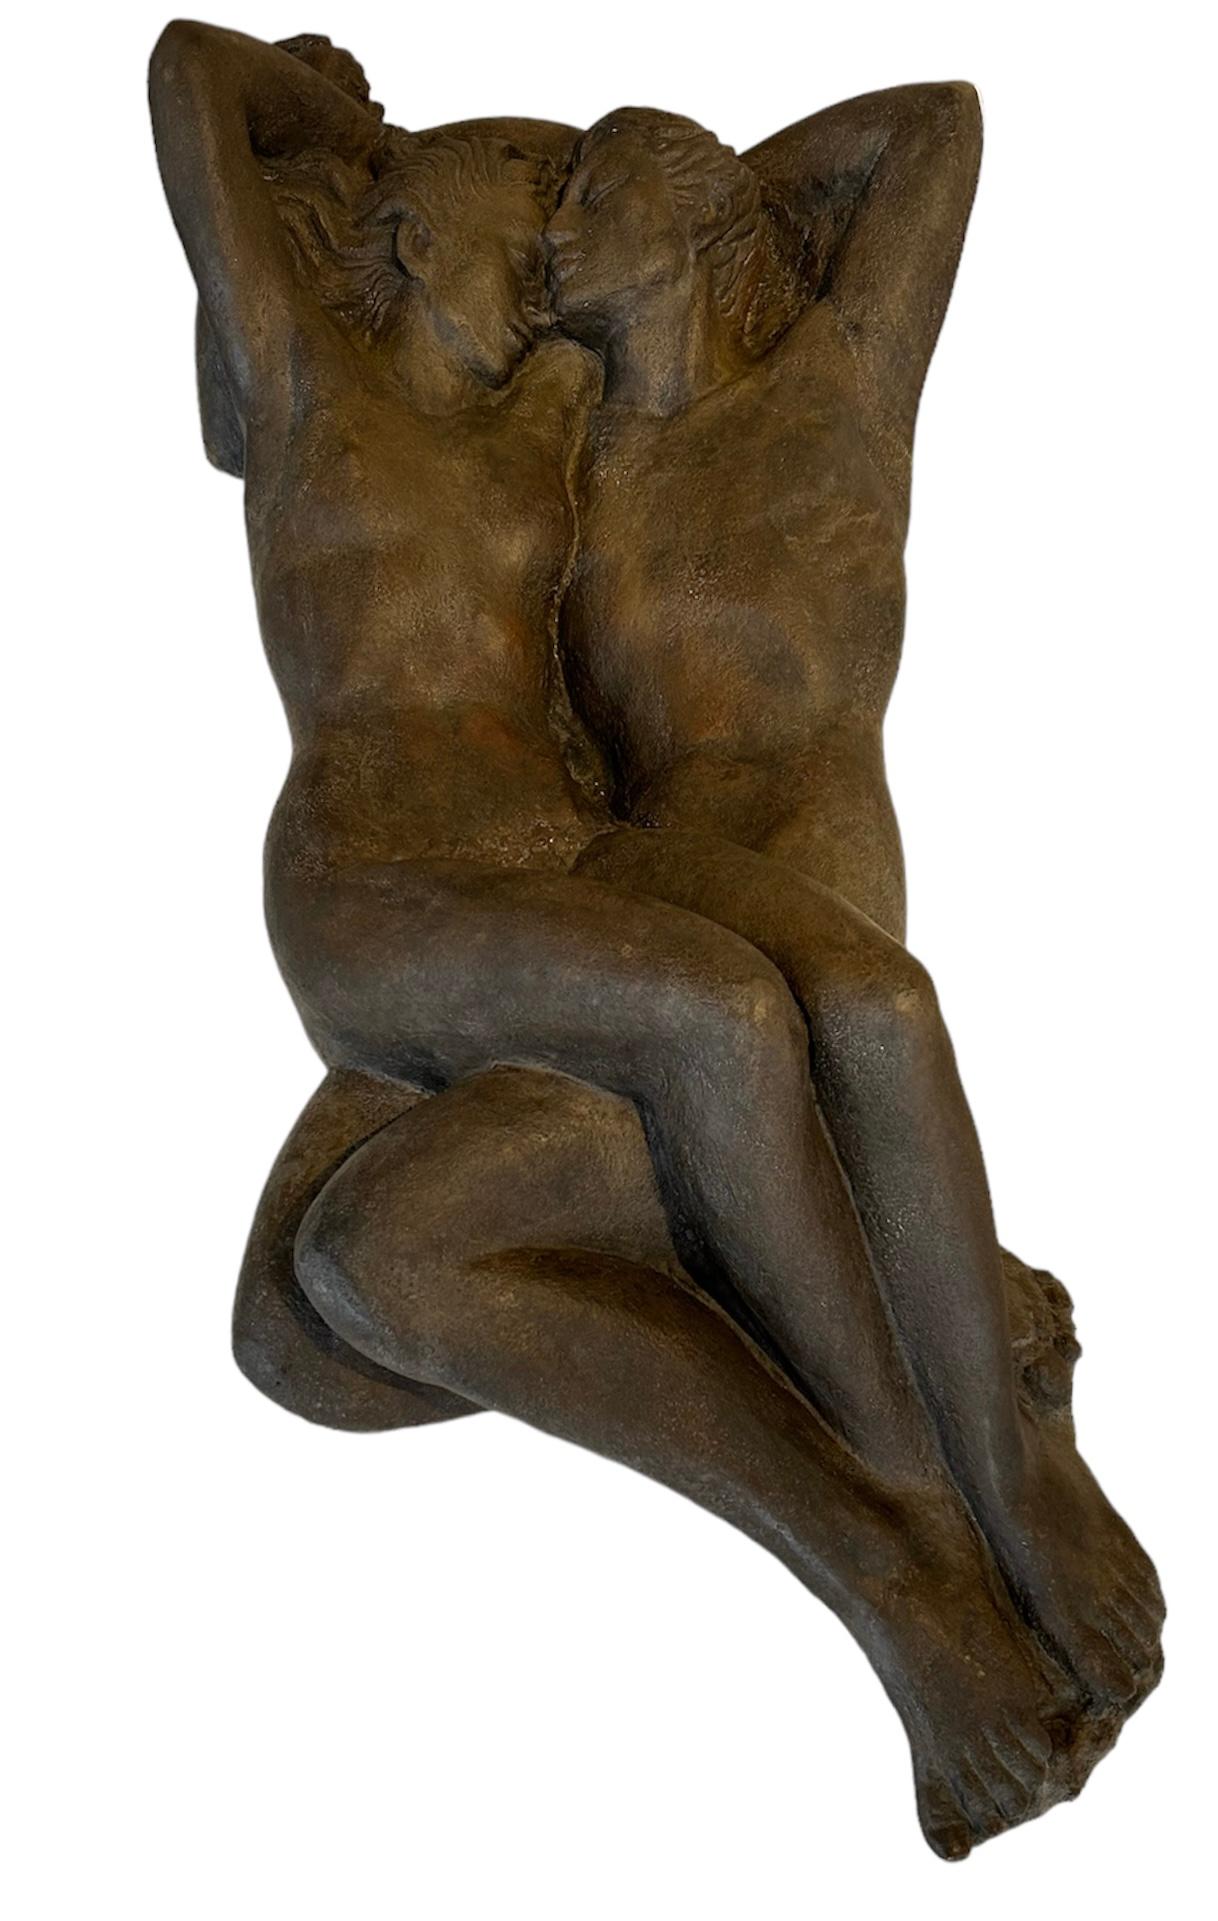 Enrique Alférez Nude Sculpture – Adam und Eva